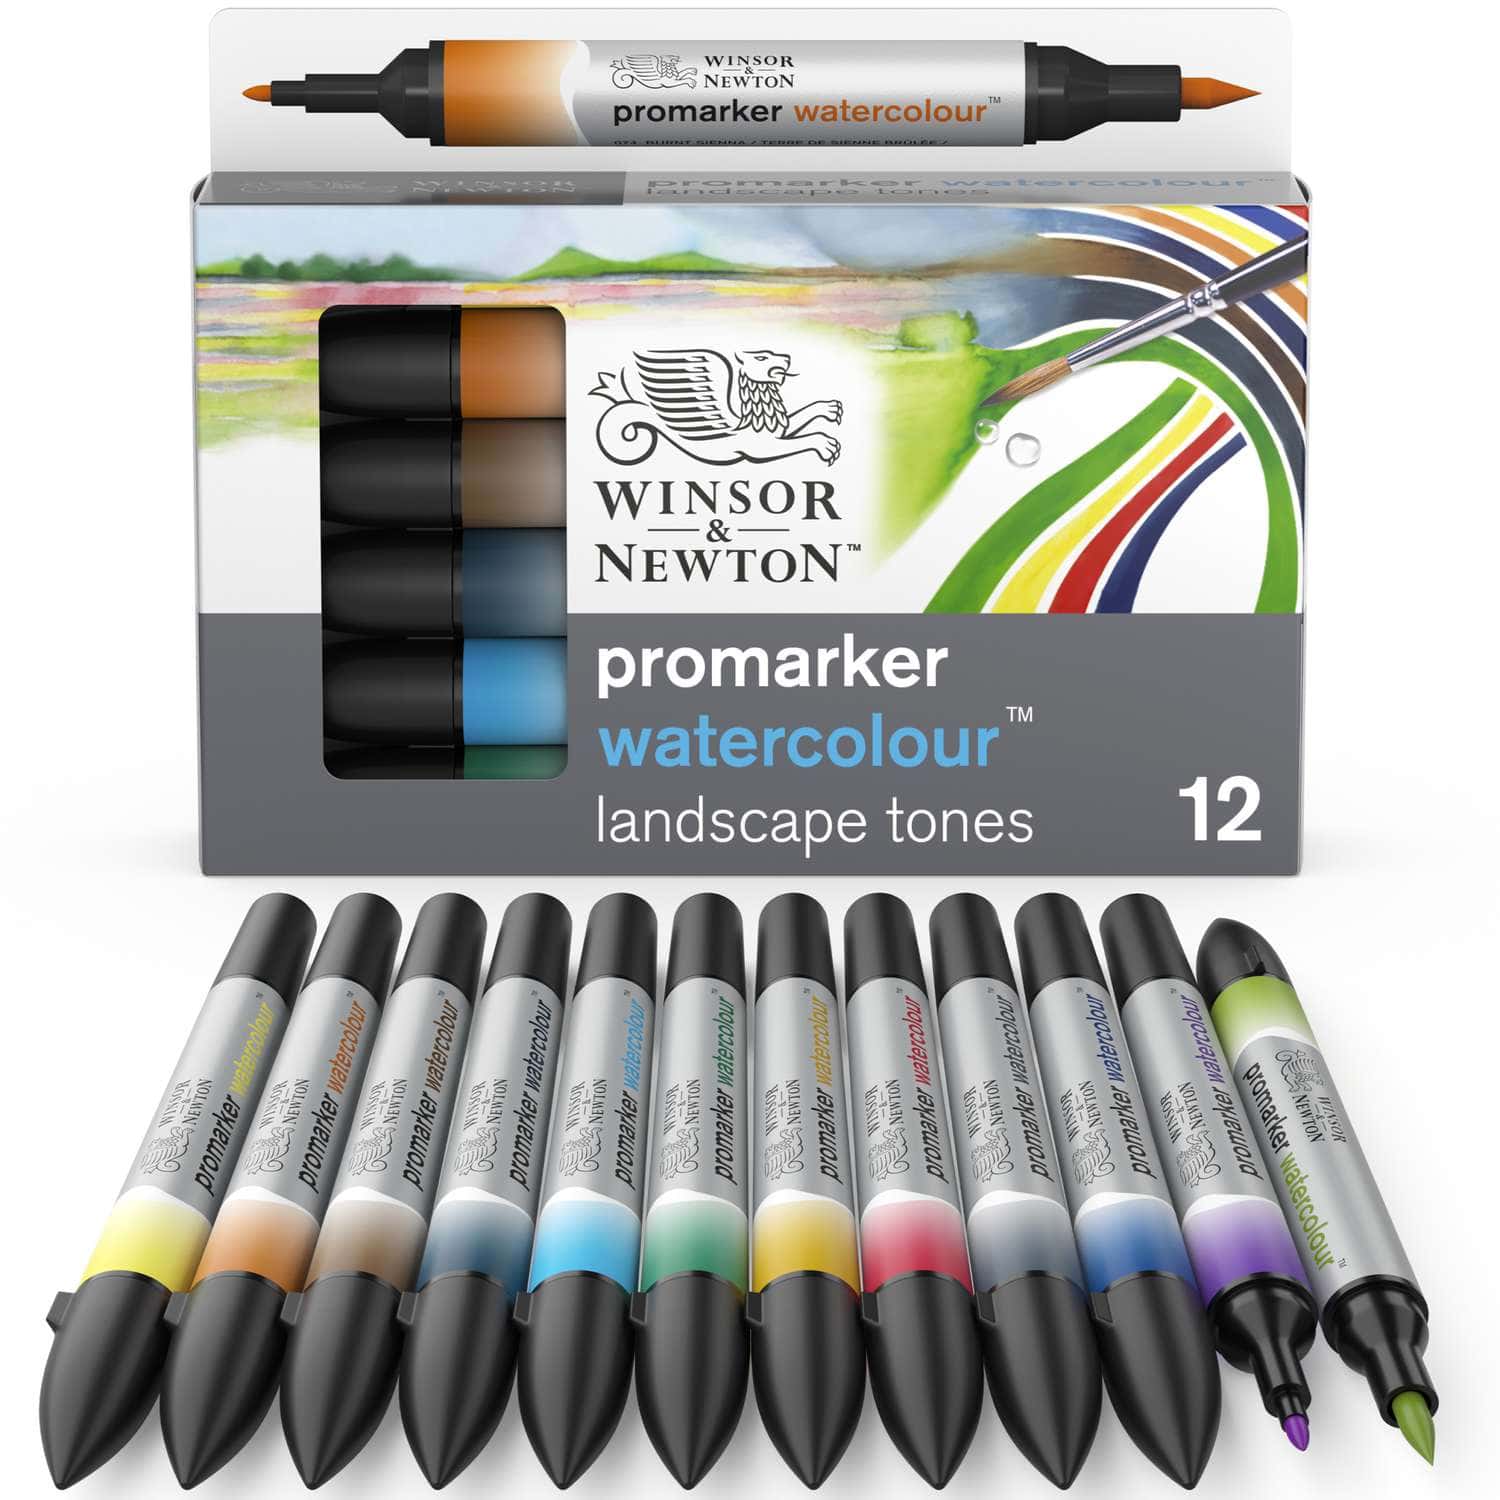 Coffrets de marqueurs aquarelle Promarker Watercolour Winsor & Newton  Le  Géant des Beaux-Arts - N°1 de la vente en ligne de matériels pour Artistes